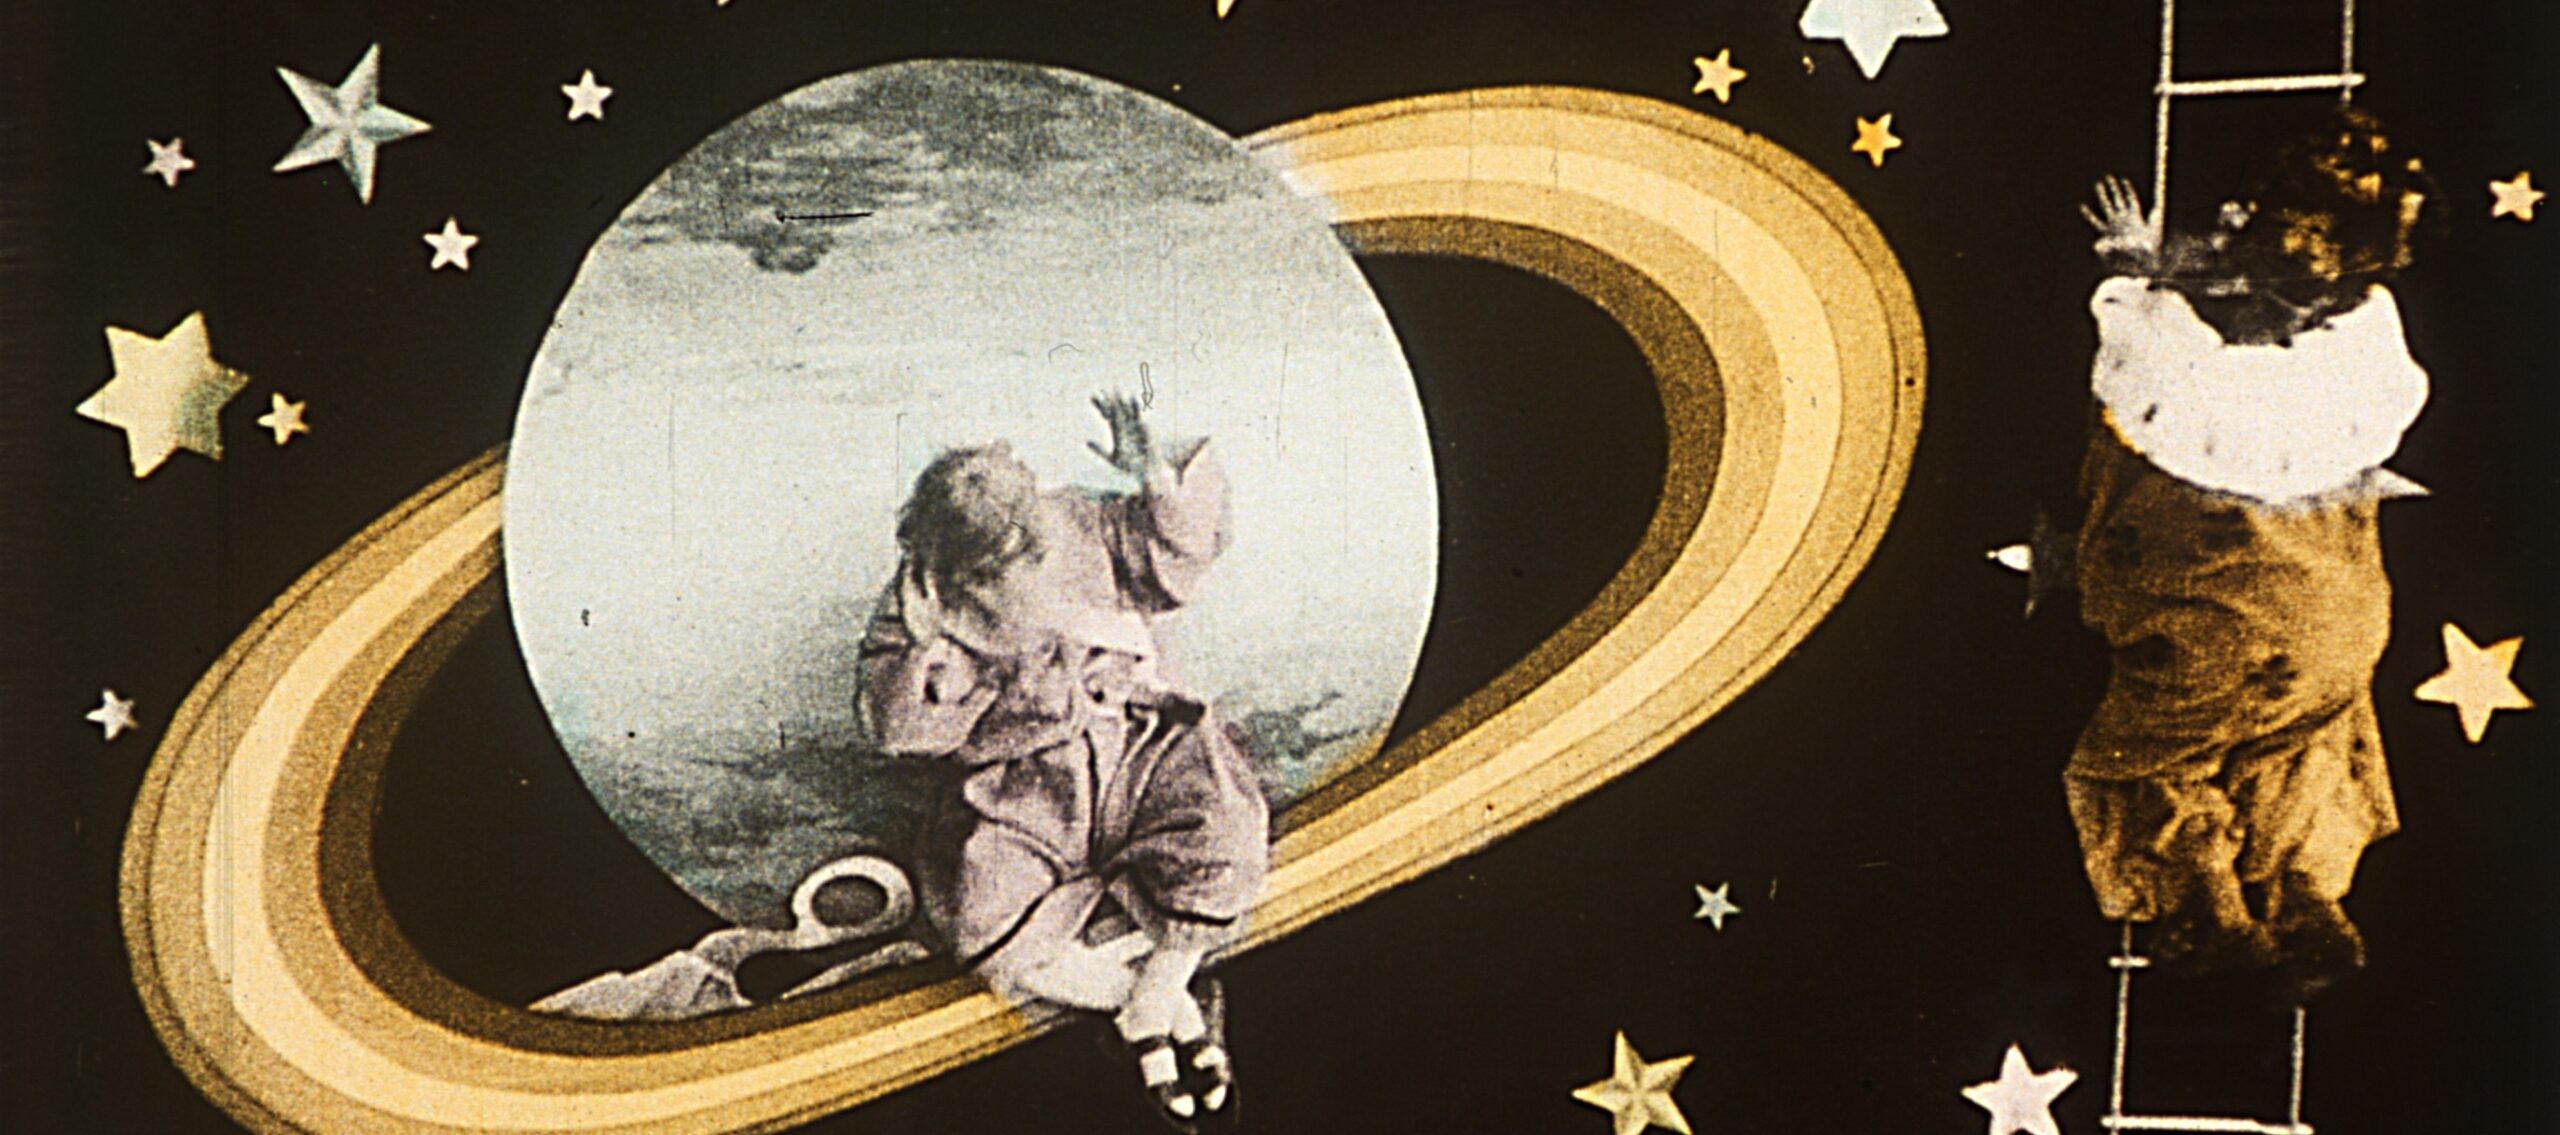 Fotograma d’El viatge a Júpiter, 1909 (detall).